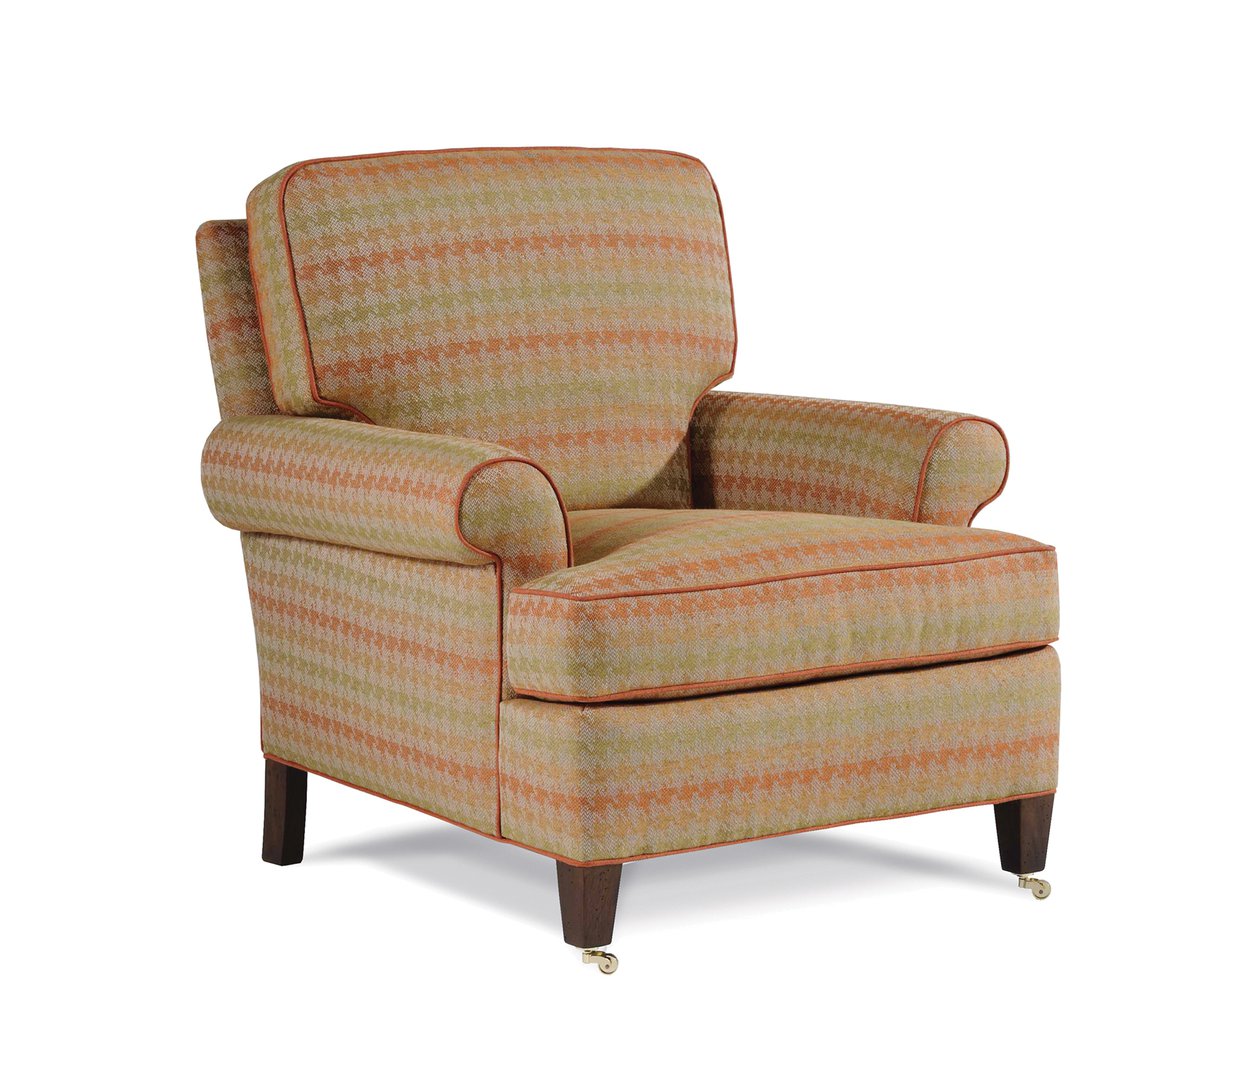 Babington Chair Image